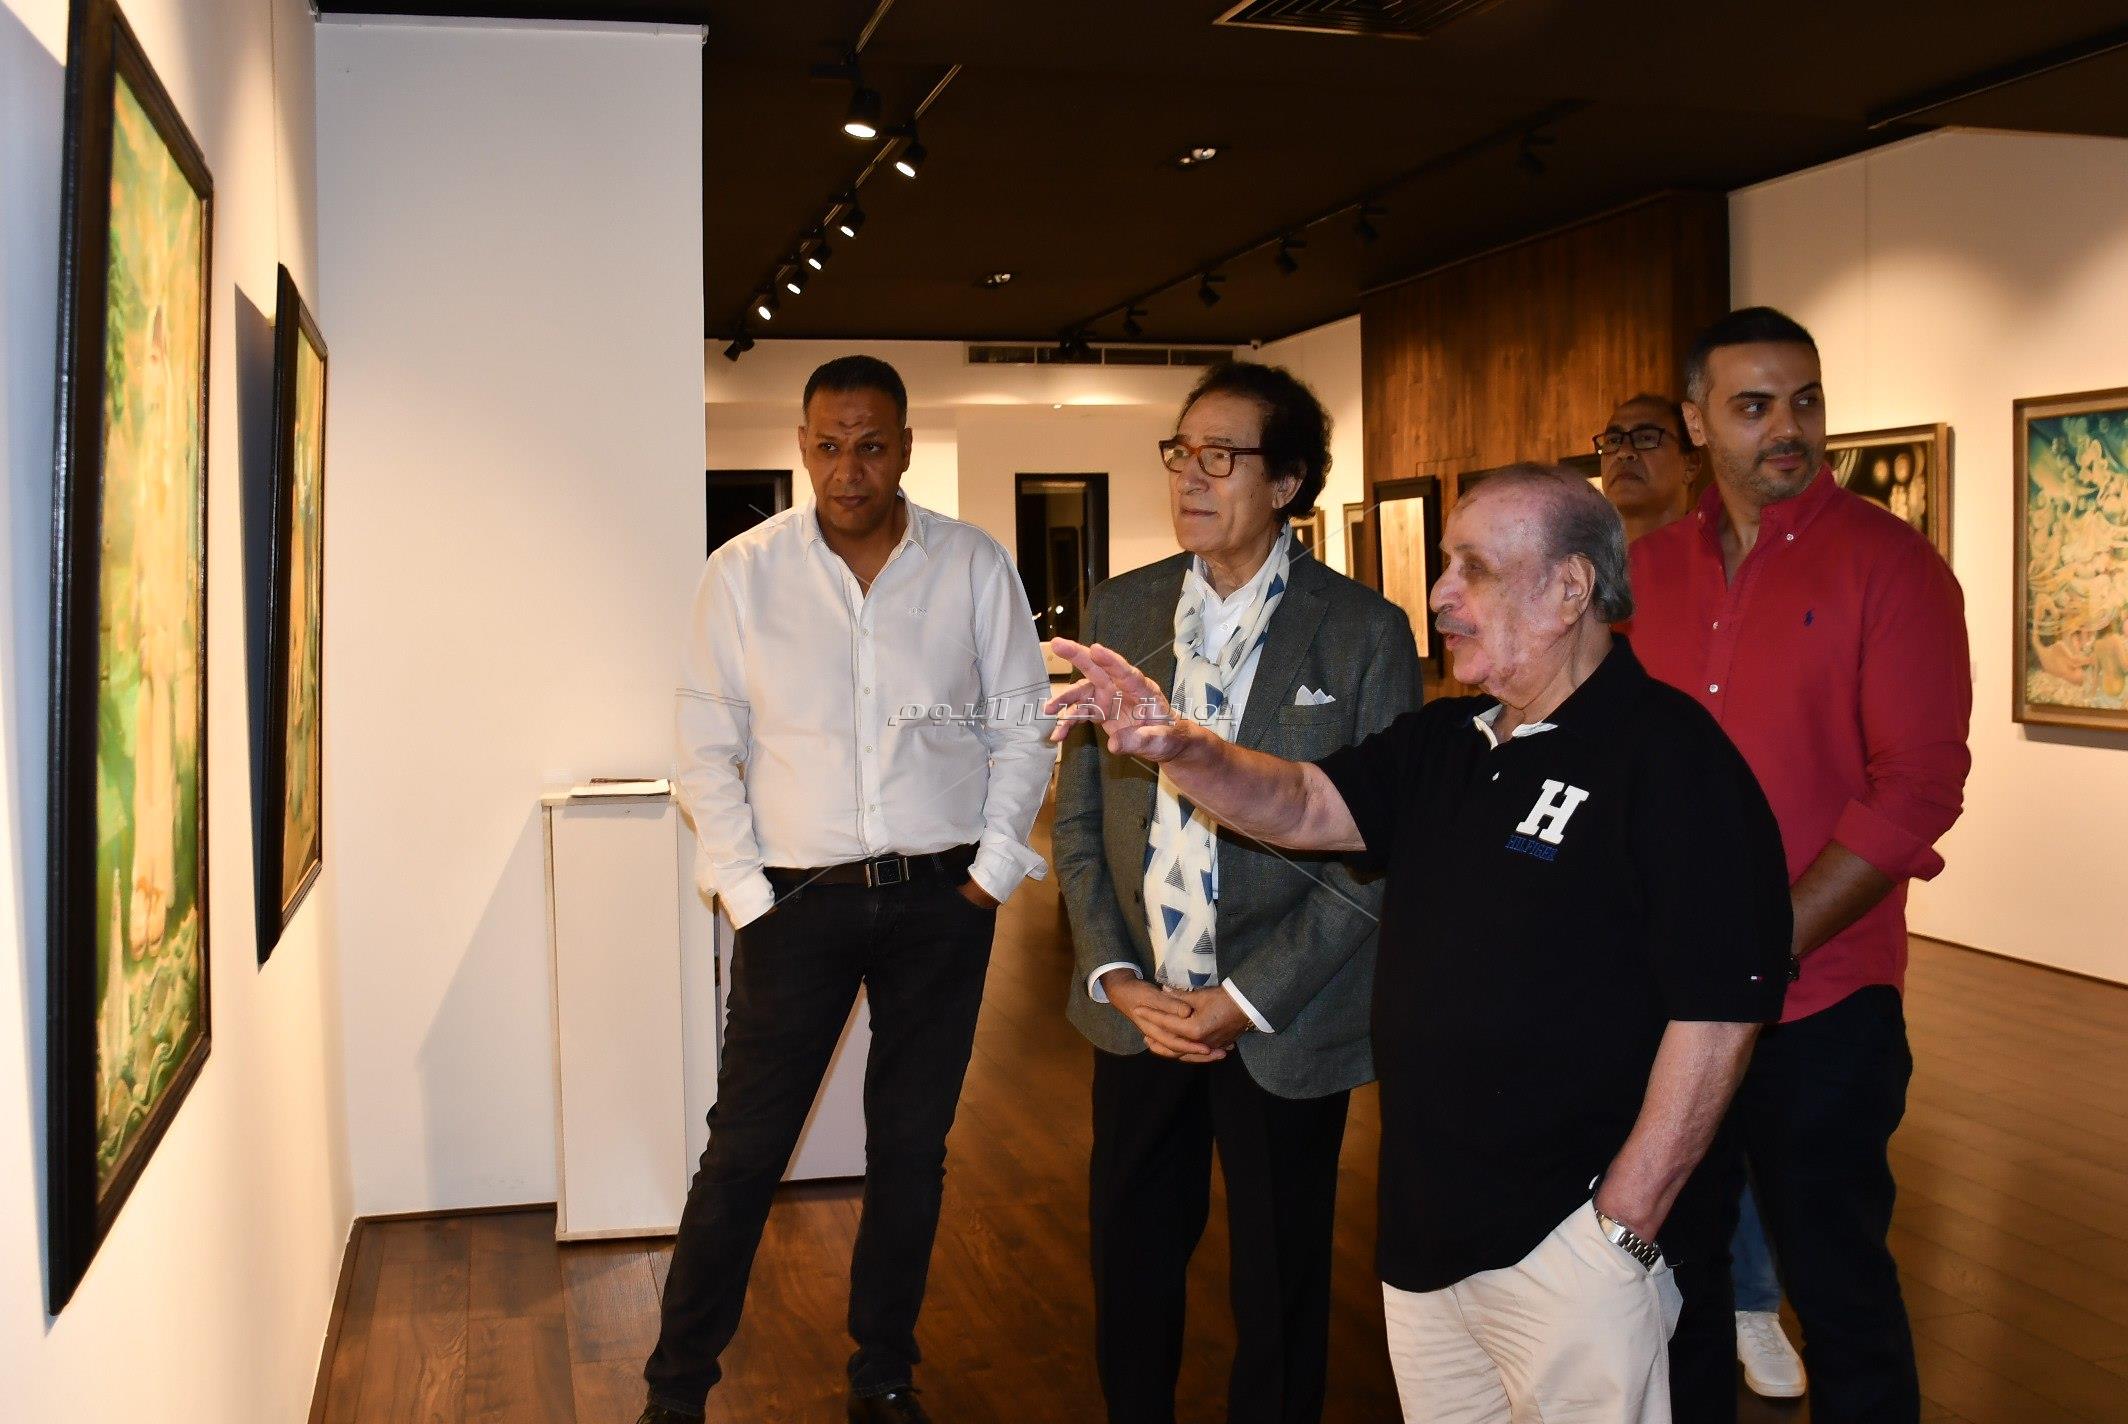 فاروق حسني يحضر معرض «الروح والذات» للفنان محمد فريد